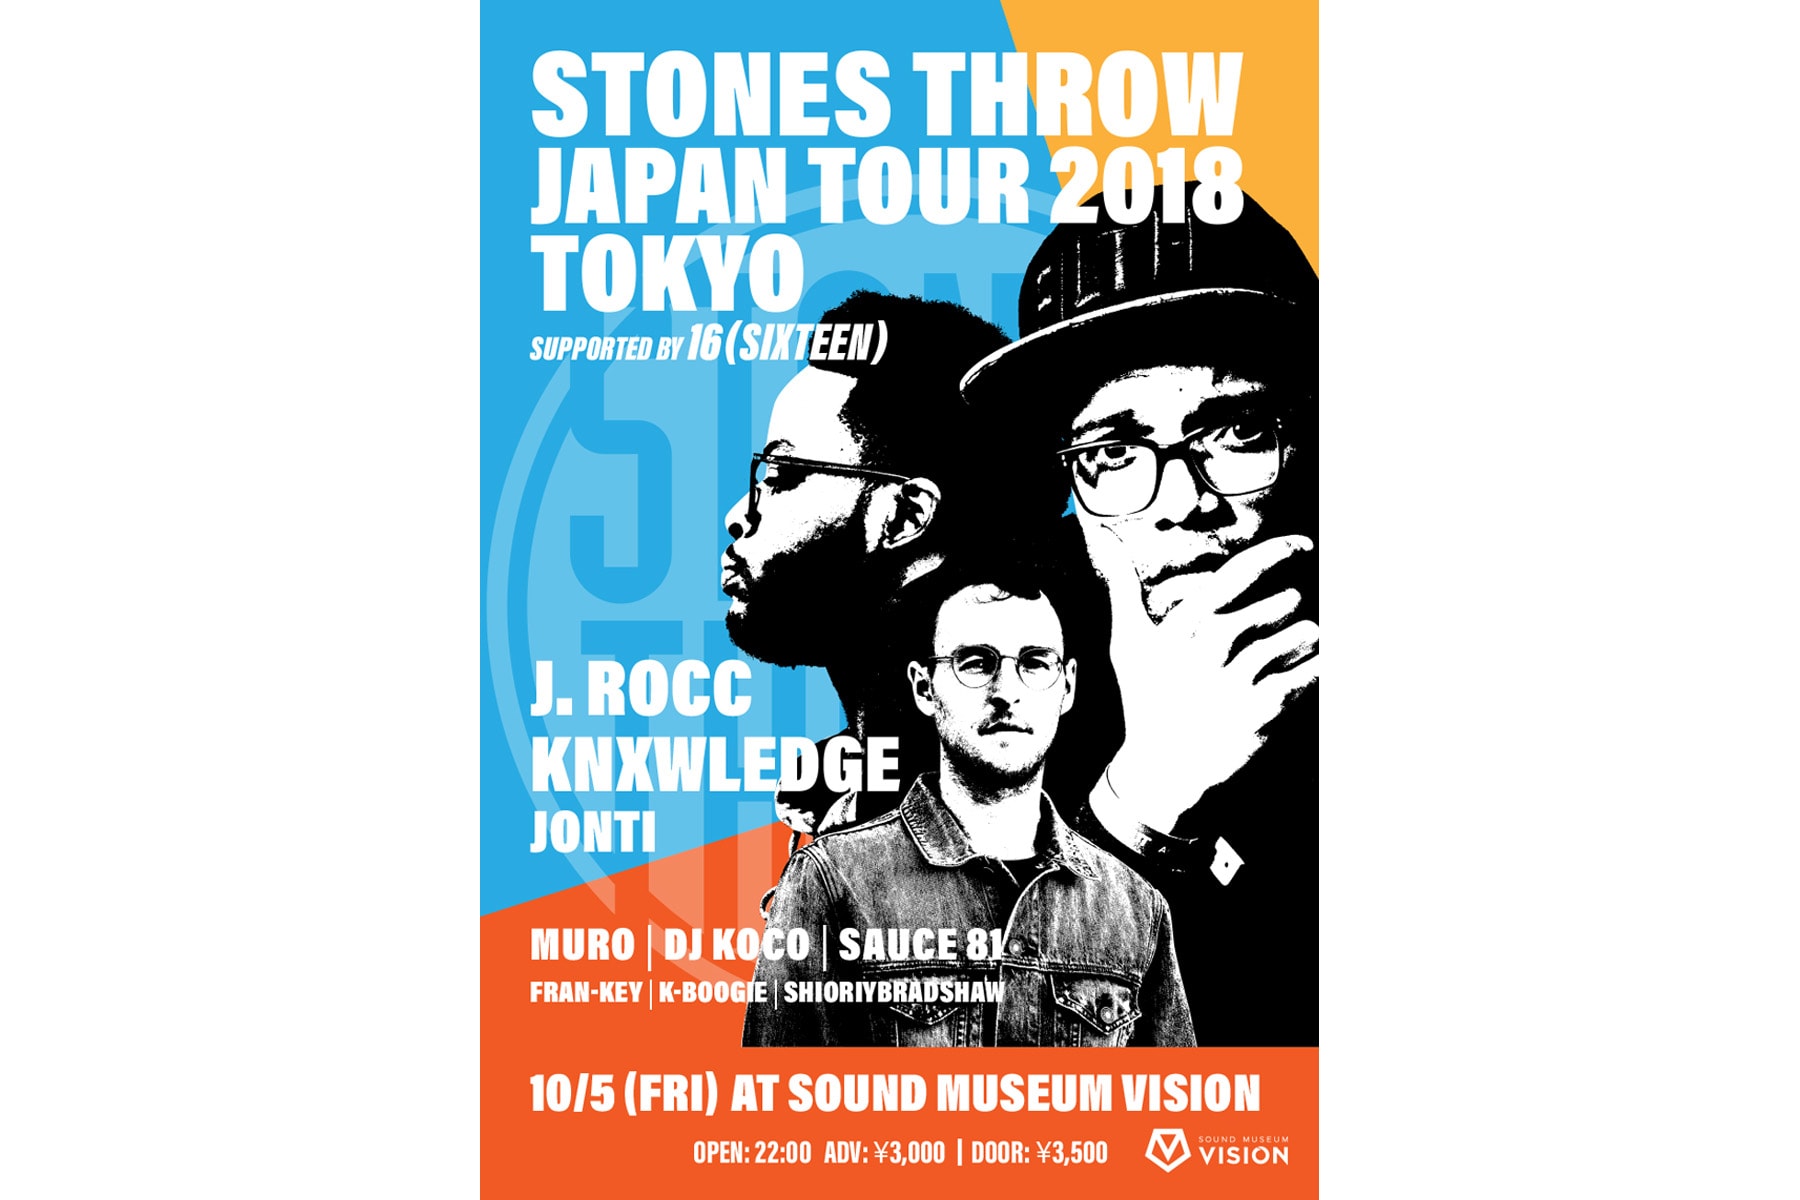 Stones Throw の2018年ジャパンツアー第2弾がスペシャルなラインナップで開催決定 ストーン スロー ストーンズスロー HYPEBEAST ハイプビースト 10月5日（金）夜に渋谷『SOUND MUSEUM VISION』で開催される「Stones Throw Japan Tour 2018 Tokyo」には、ターンテーブリスト集団BEAT JUNKIESを立ち上げ、ダイナミックかつファンキーなパフォーマンスで世界中に熱狂的なファンを持つ南カリフォルニアが生んだレジェンドDJの J.Rocc J・ロック 、そして Anderson .Paak アンダーソン・パーク とのスペシャルユニット NxWorries ノーウォーリーズ を結成しており Kendrick Lamar ケンドリック・ラマー や Joey Bada$$ ジョーイ・バッドアス など数々の楽曲のプロデュースも手がける現在のLAを代表するビートメーカー Knxwledge ノレッジ も参画。さらにサイケデリックでメロウな最新作 Tokorats を去年発表したオーストラリアからの気鋭プロデューサー マルチプレイヤーの Jonti ジョンティ も東京公演のみ追加決定した。